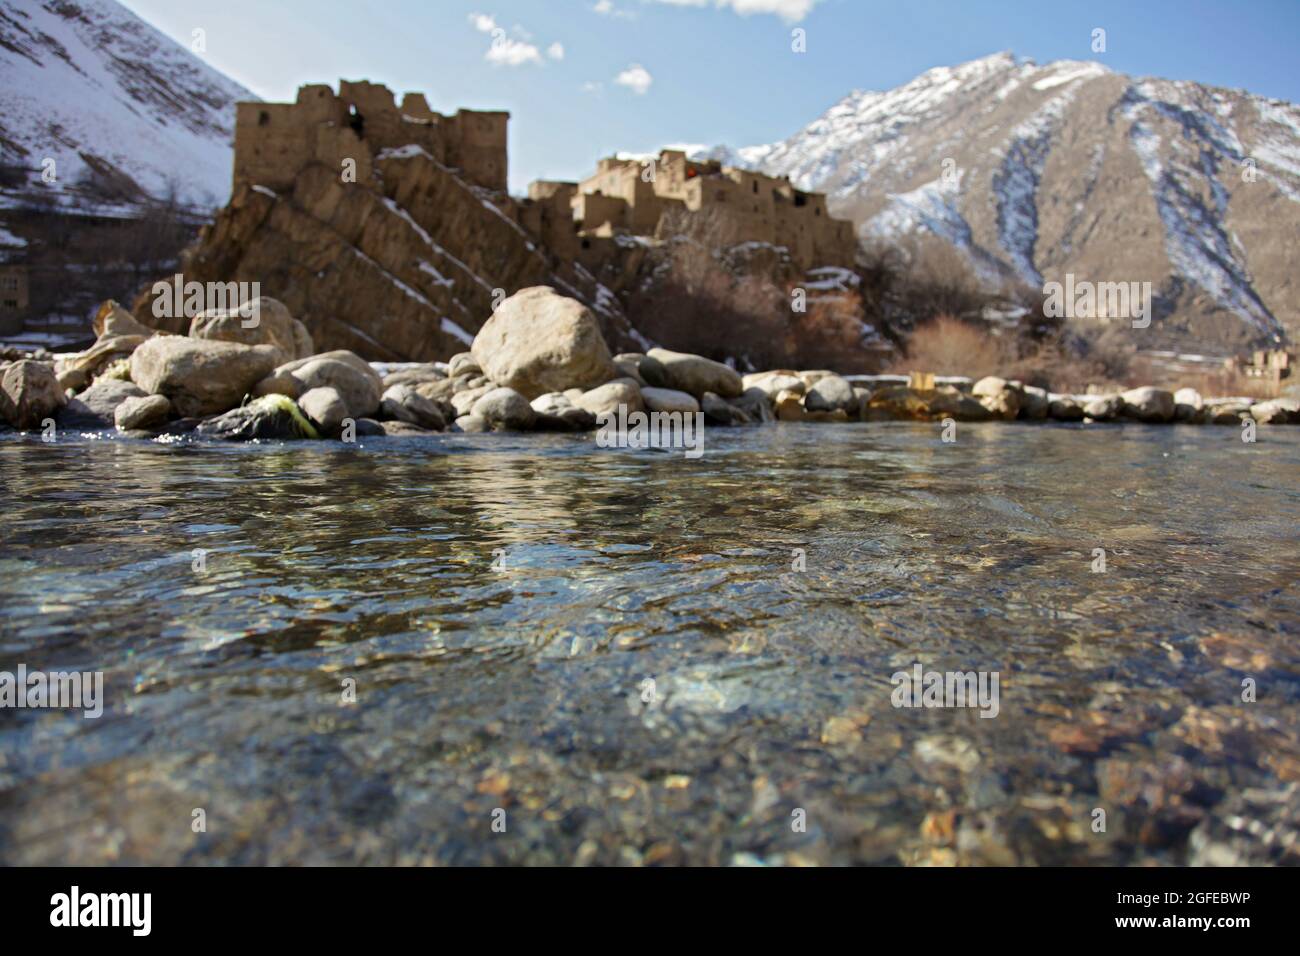 L'eau froide s'écoule des montagnes et remplit la rivière dans le district de Dara, province de Panjshir, Afghanistan, le 3 janvier 2010. Banque D'Images